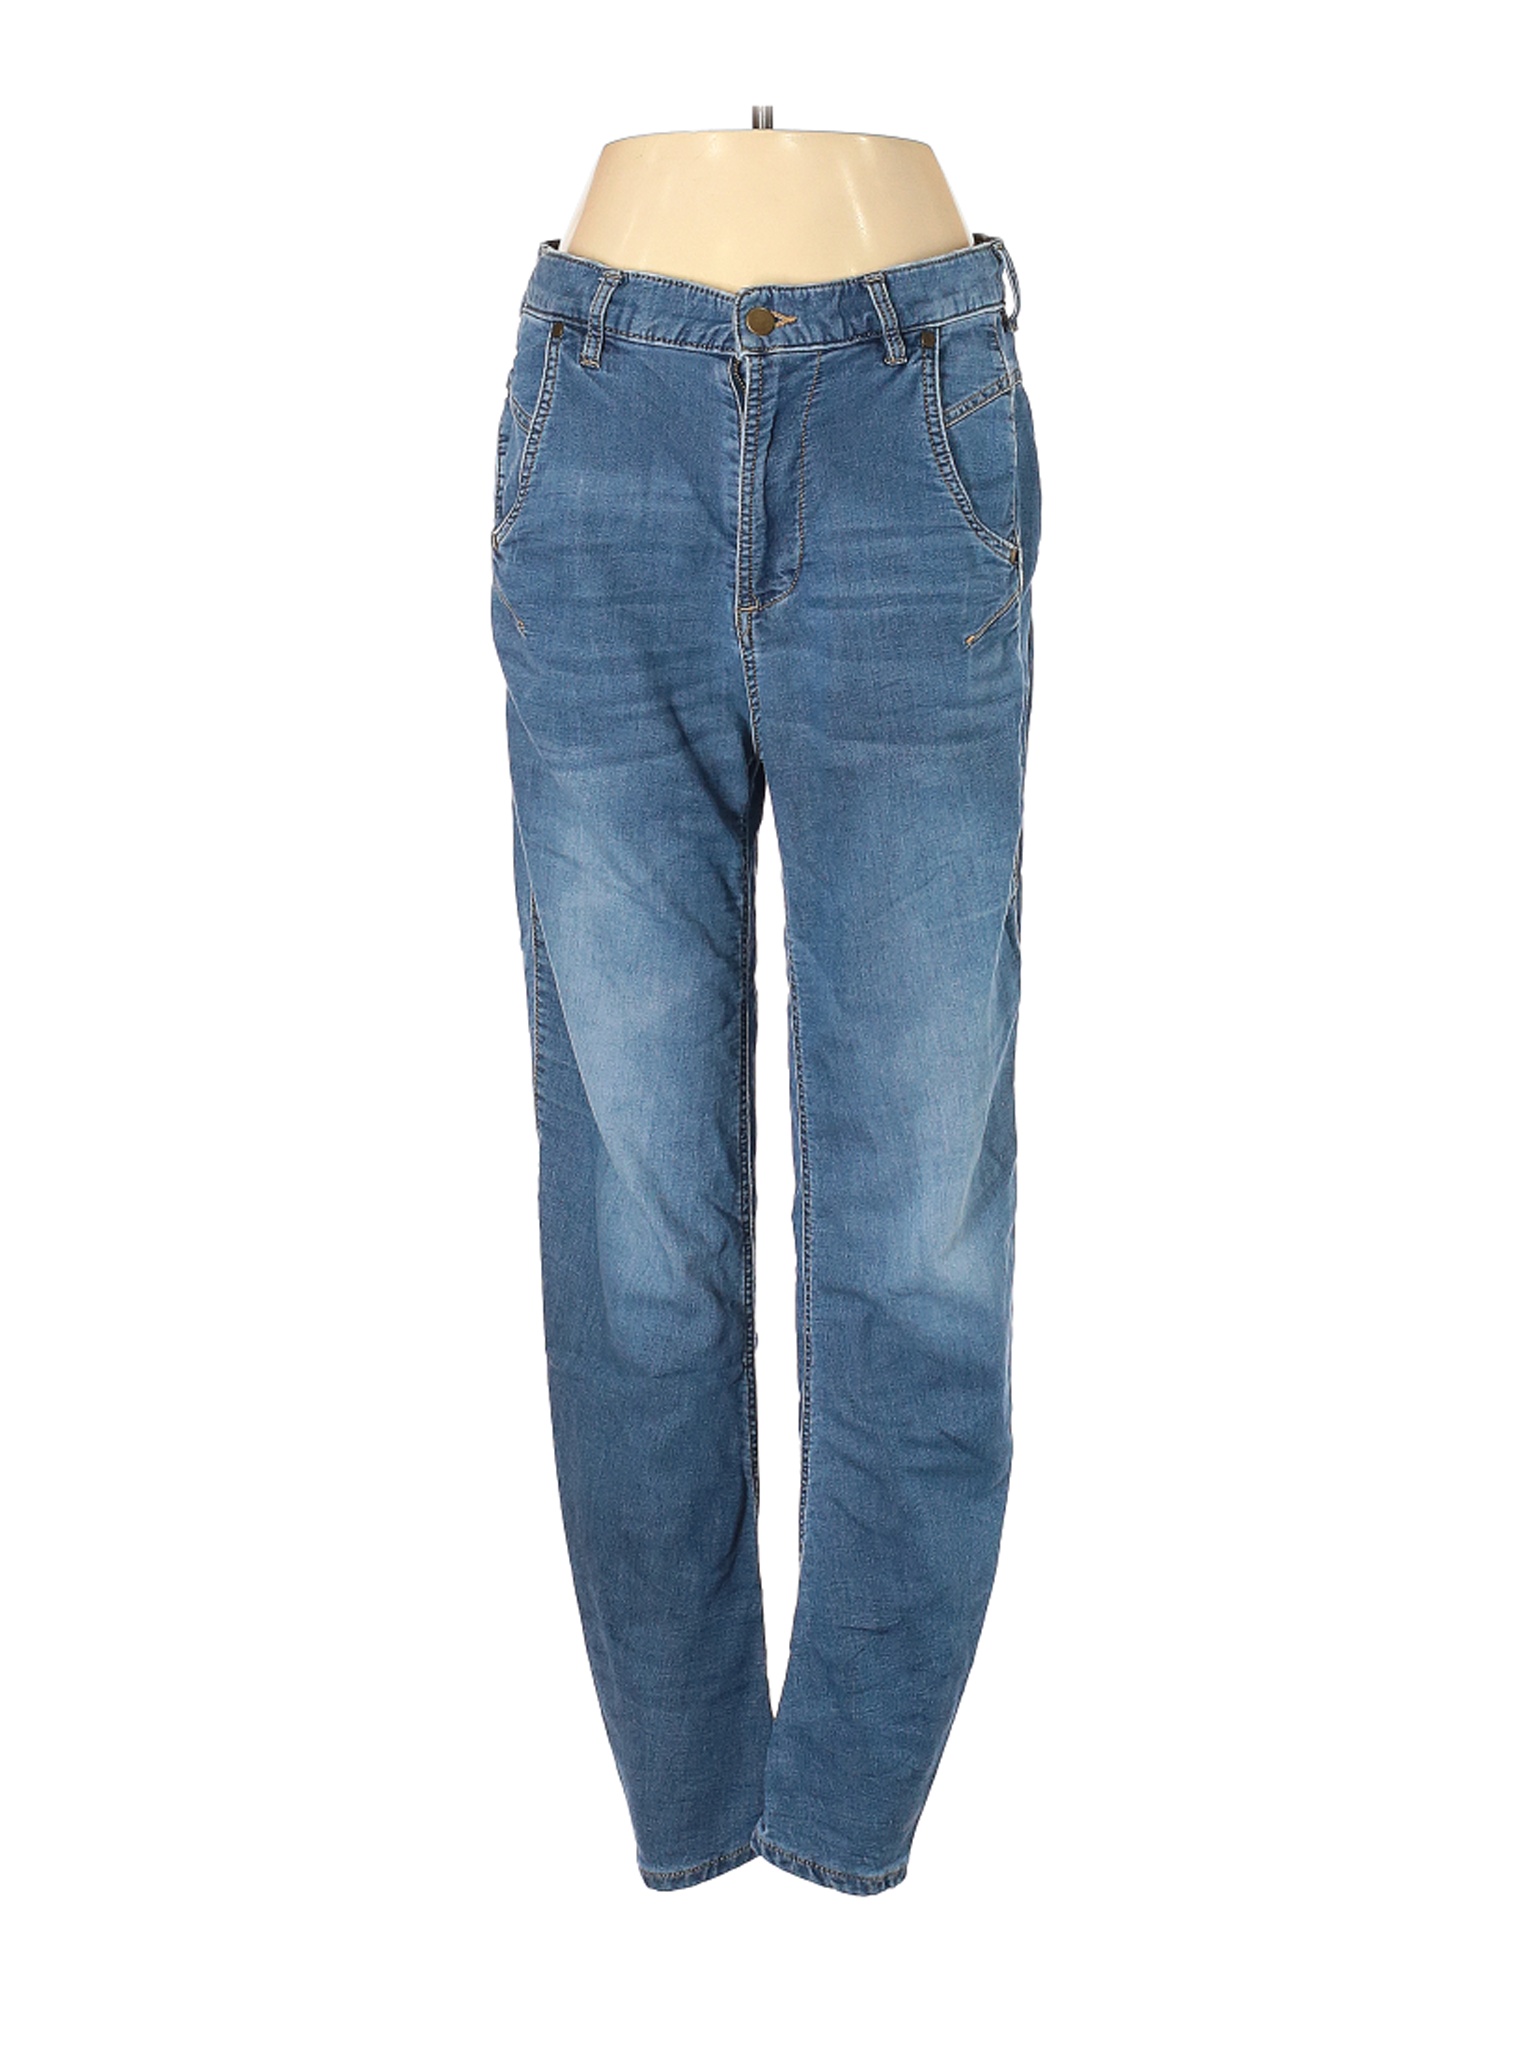 Reebok Women Blue Jeans 27W | eBay